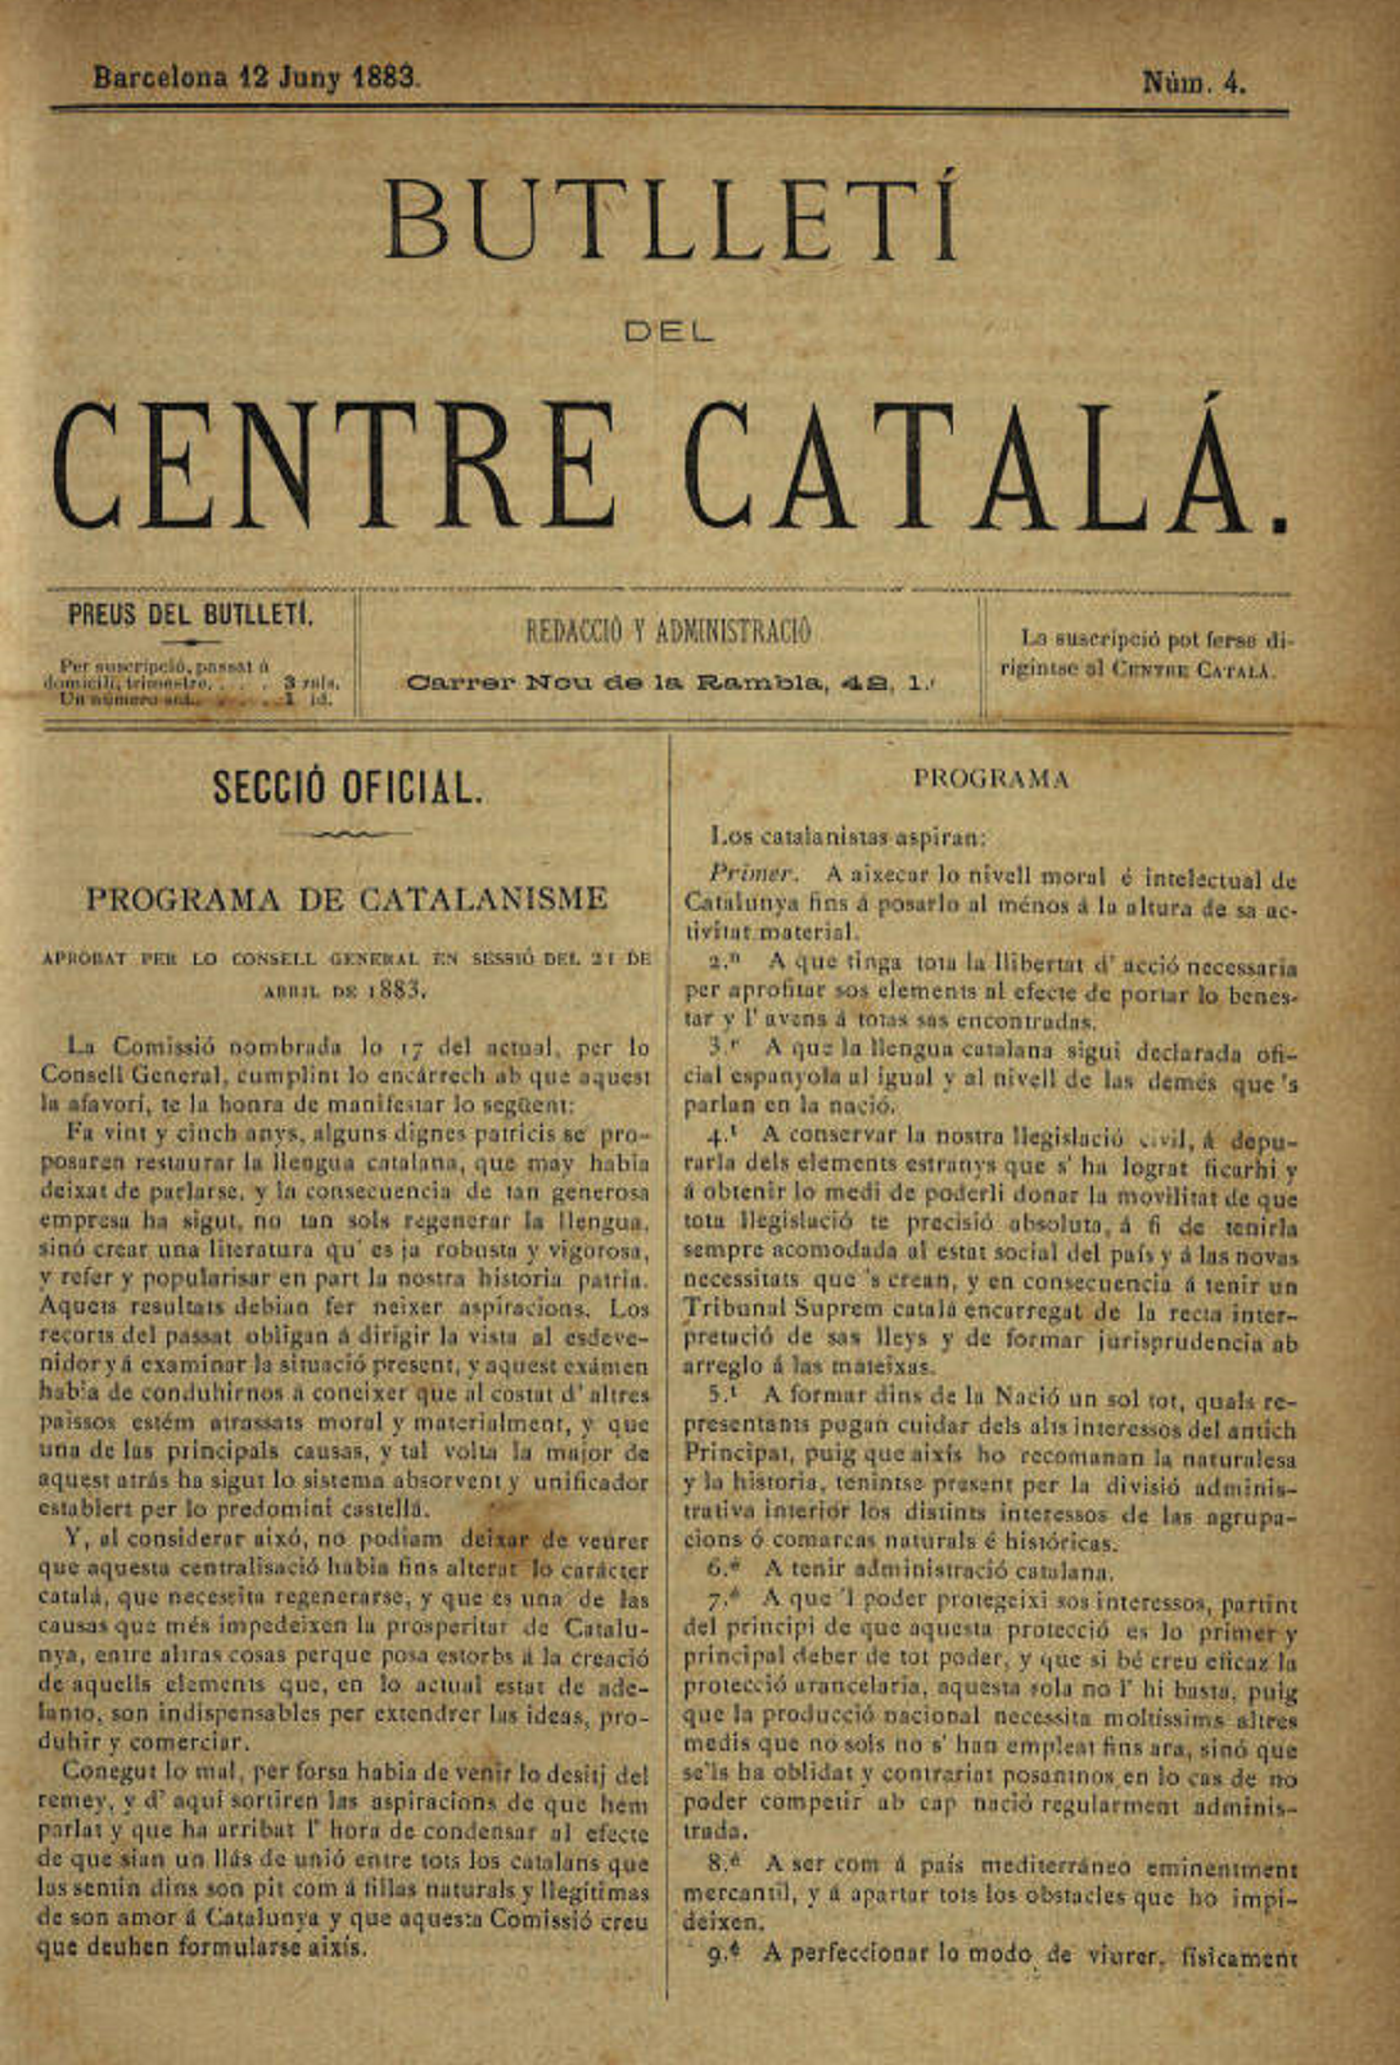 El Centre Català proposa oficialitzar la llengua catalana arreu de l’estat espanyol